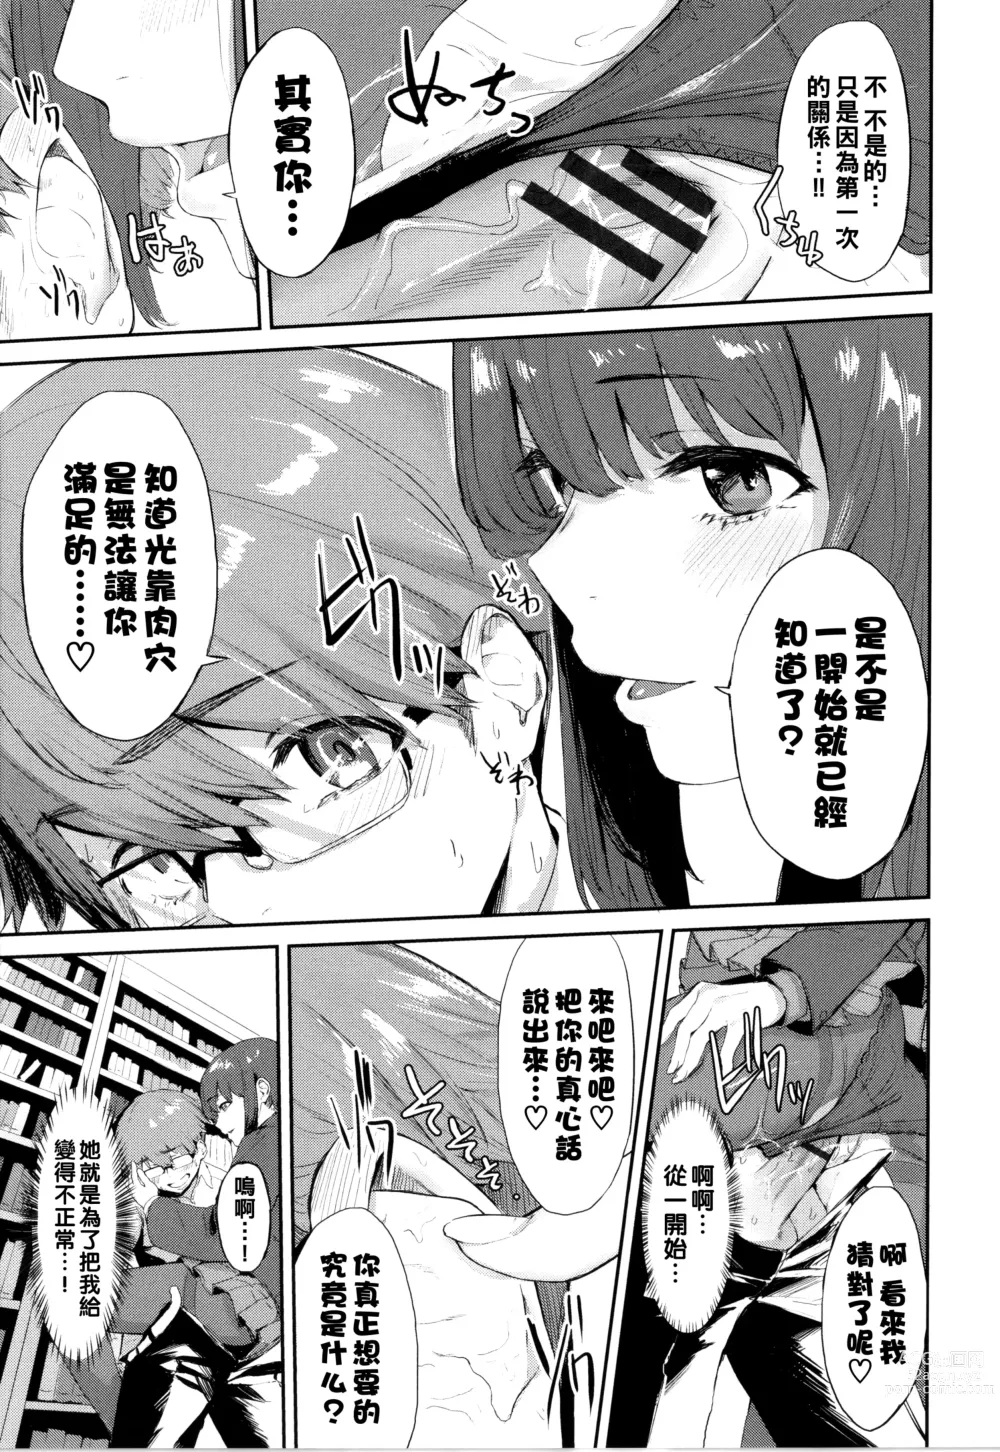 Page 13 of manga Toshoshitsu no Himitsu - Library Secrets